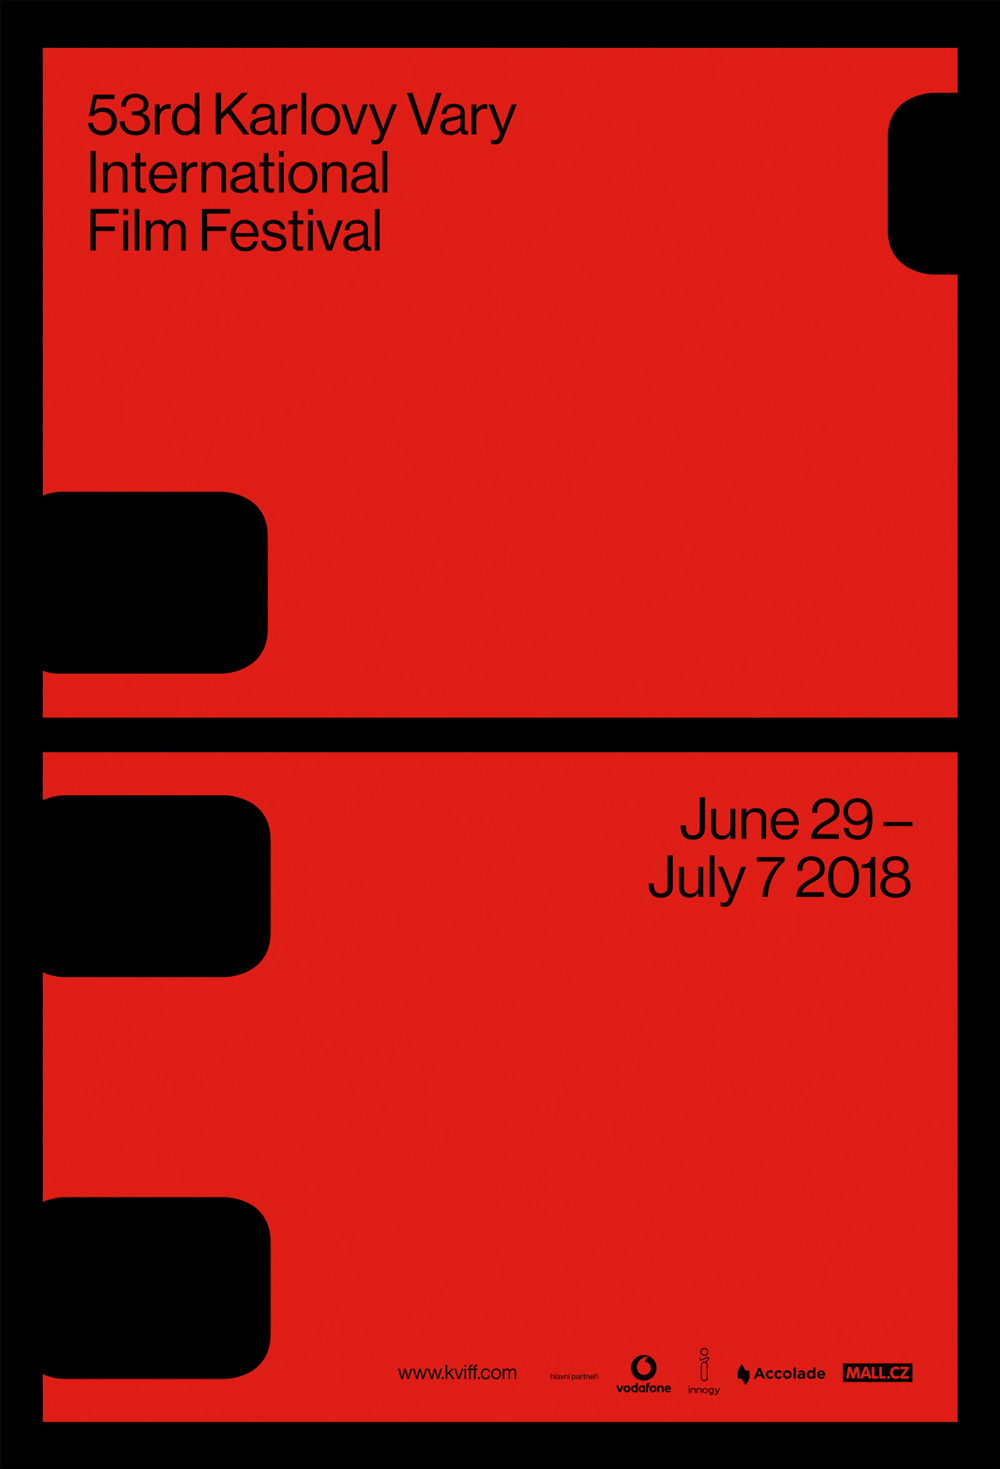 New Logo and Identity for 53rd Karlovy Vary International Film Festival by Studio Najbrt